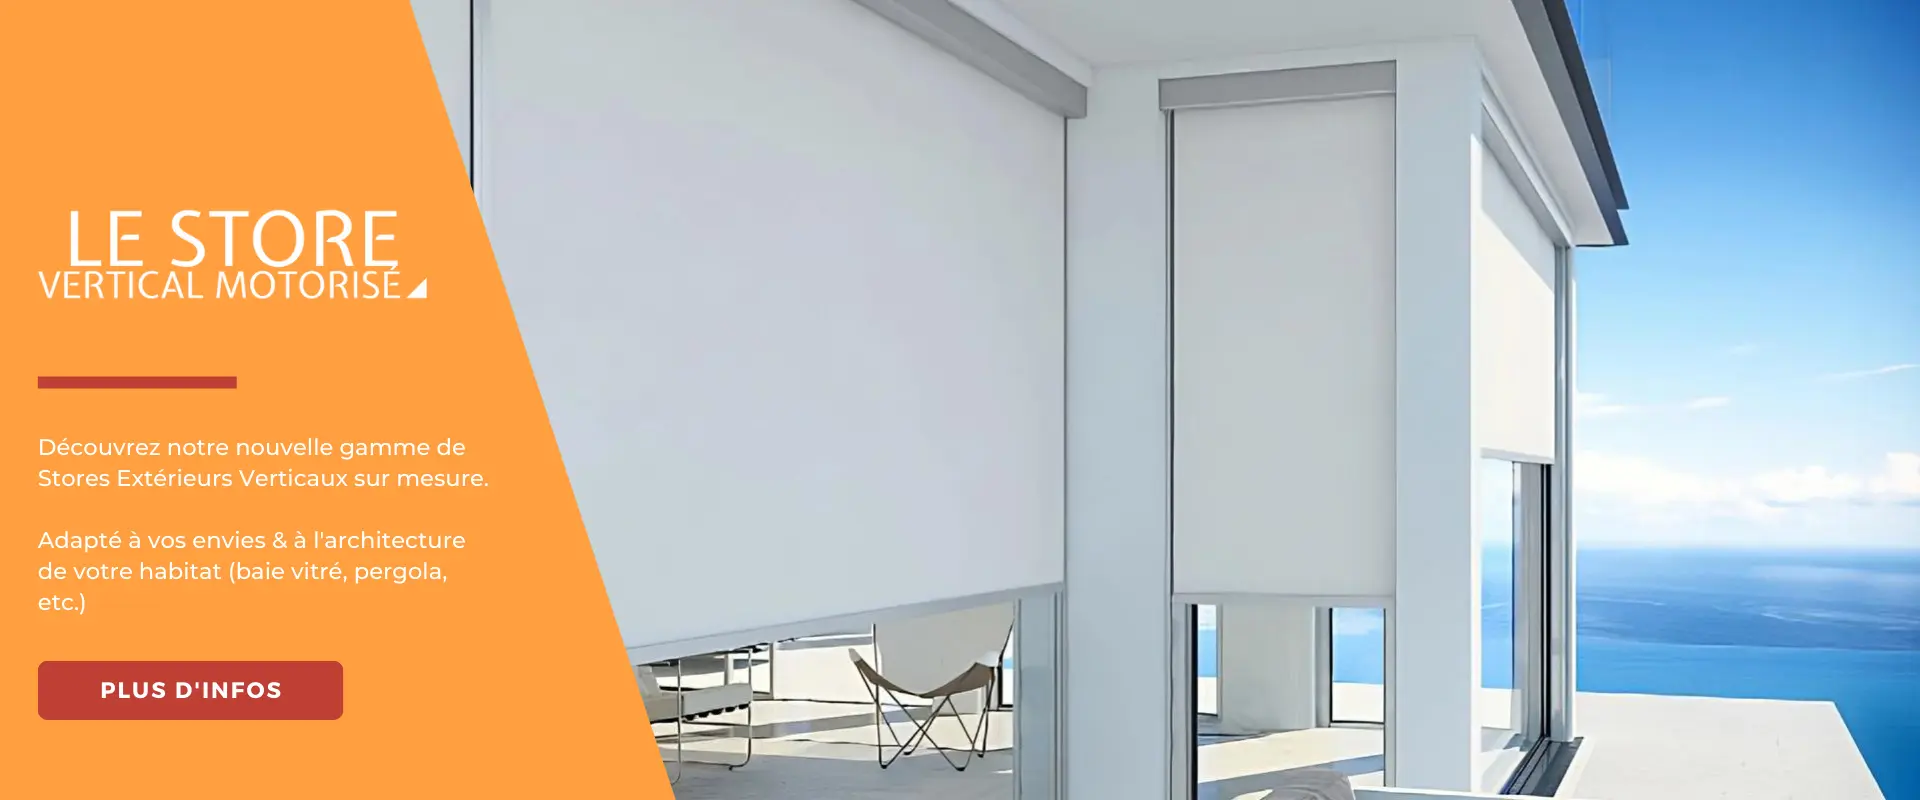 Nouveauté Glass Systems avec le Glass Concept, aménagement extérieur d'espace ombragé avec fermeture en verre.